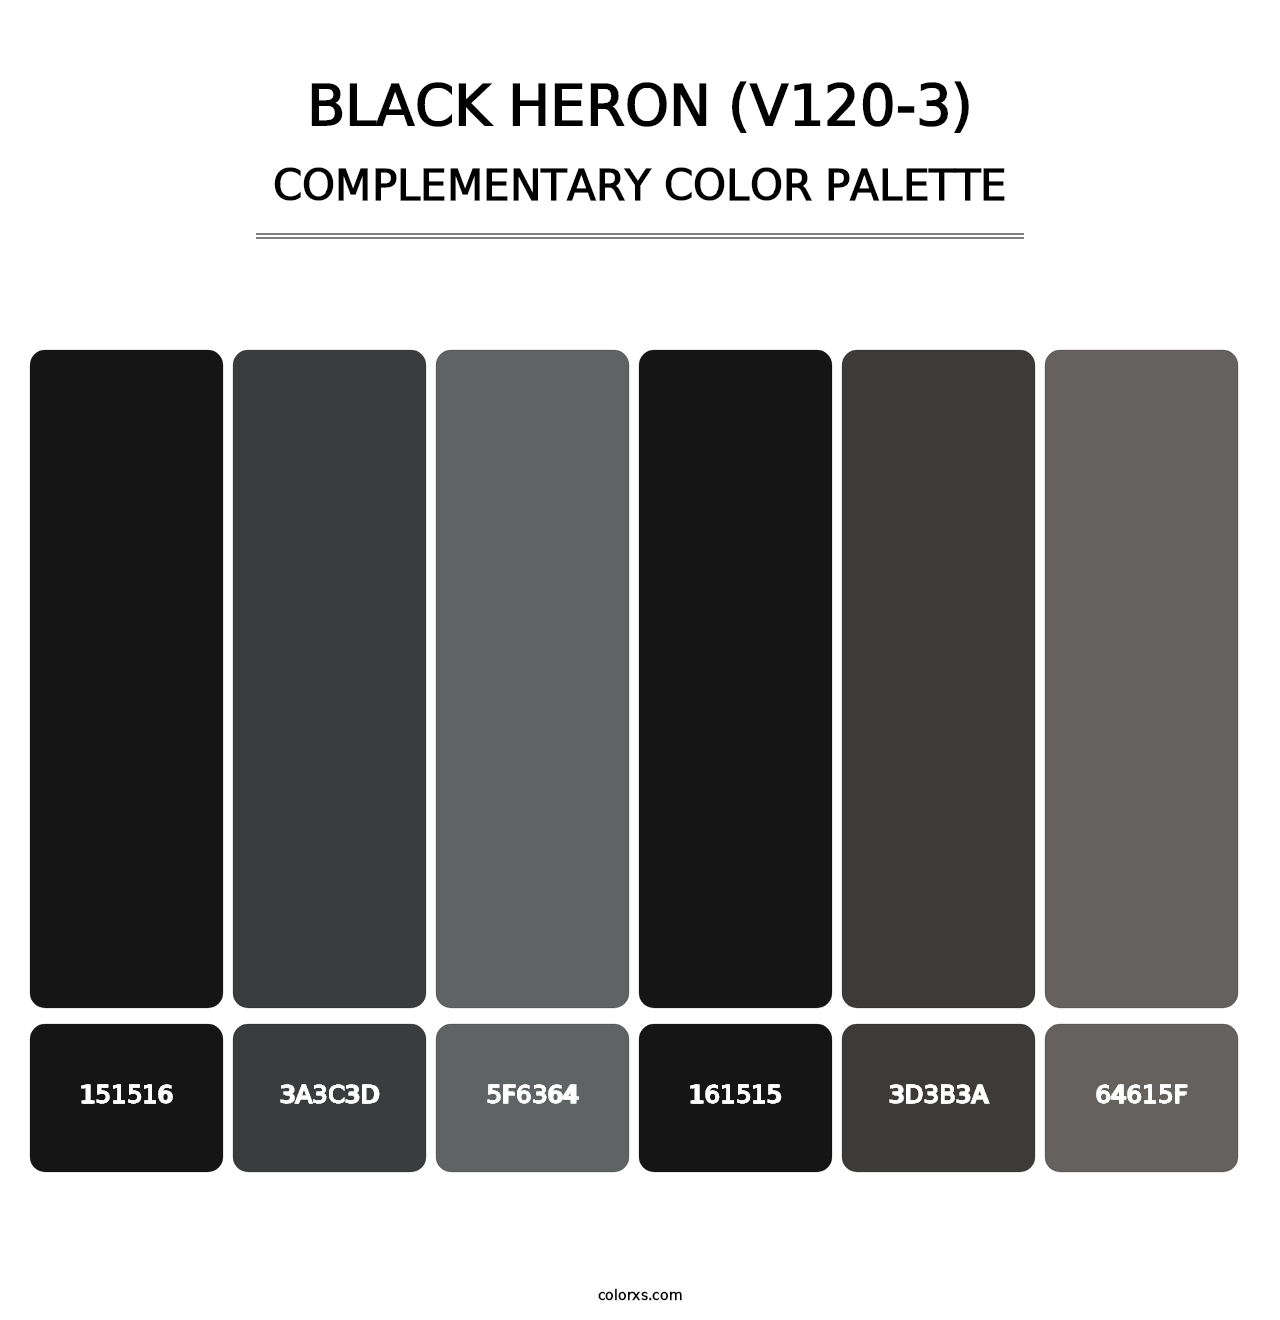 Black Heron (V120-3) - Complementary Color Palette